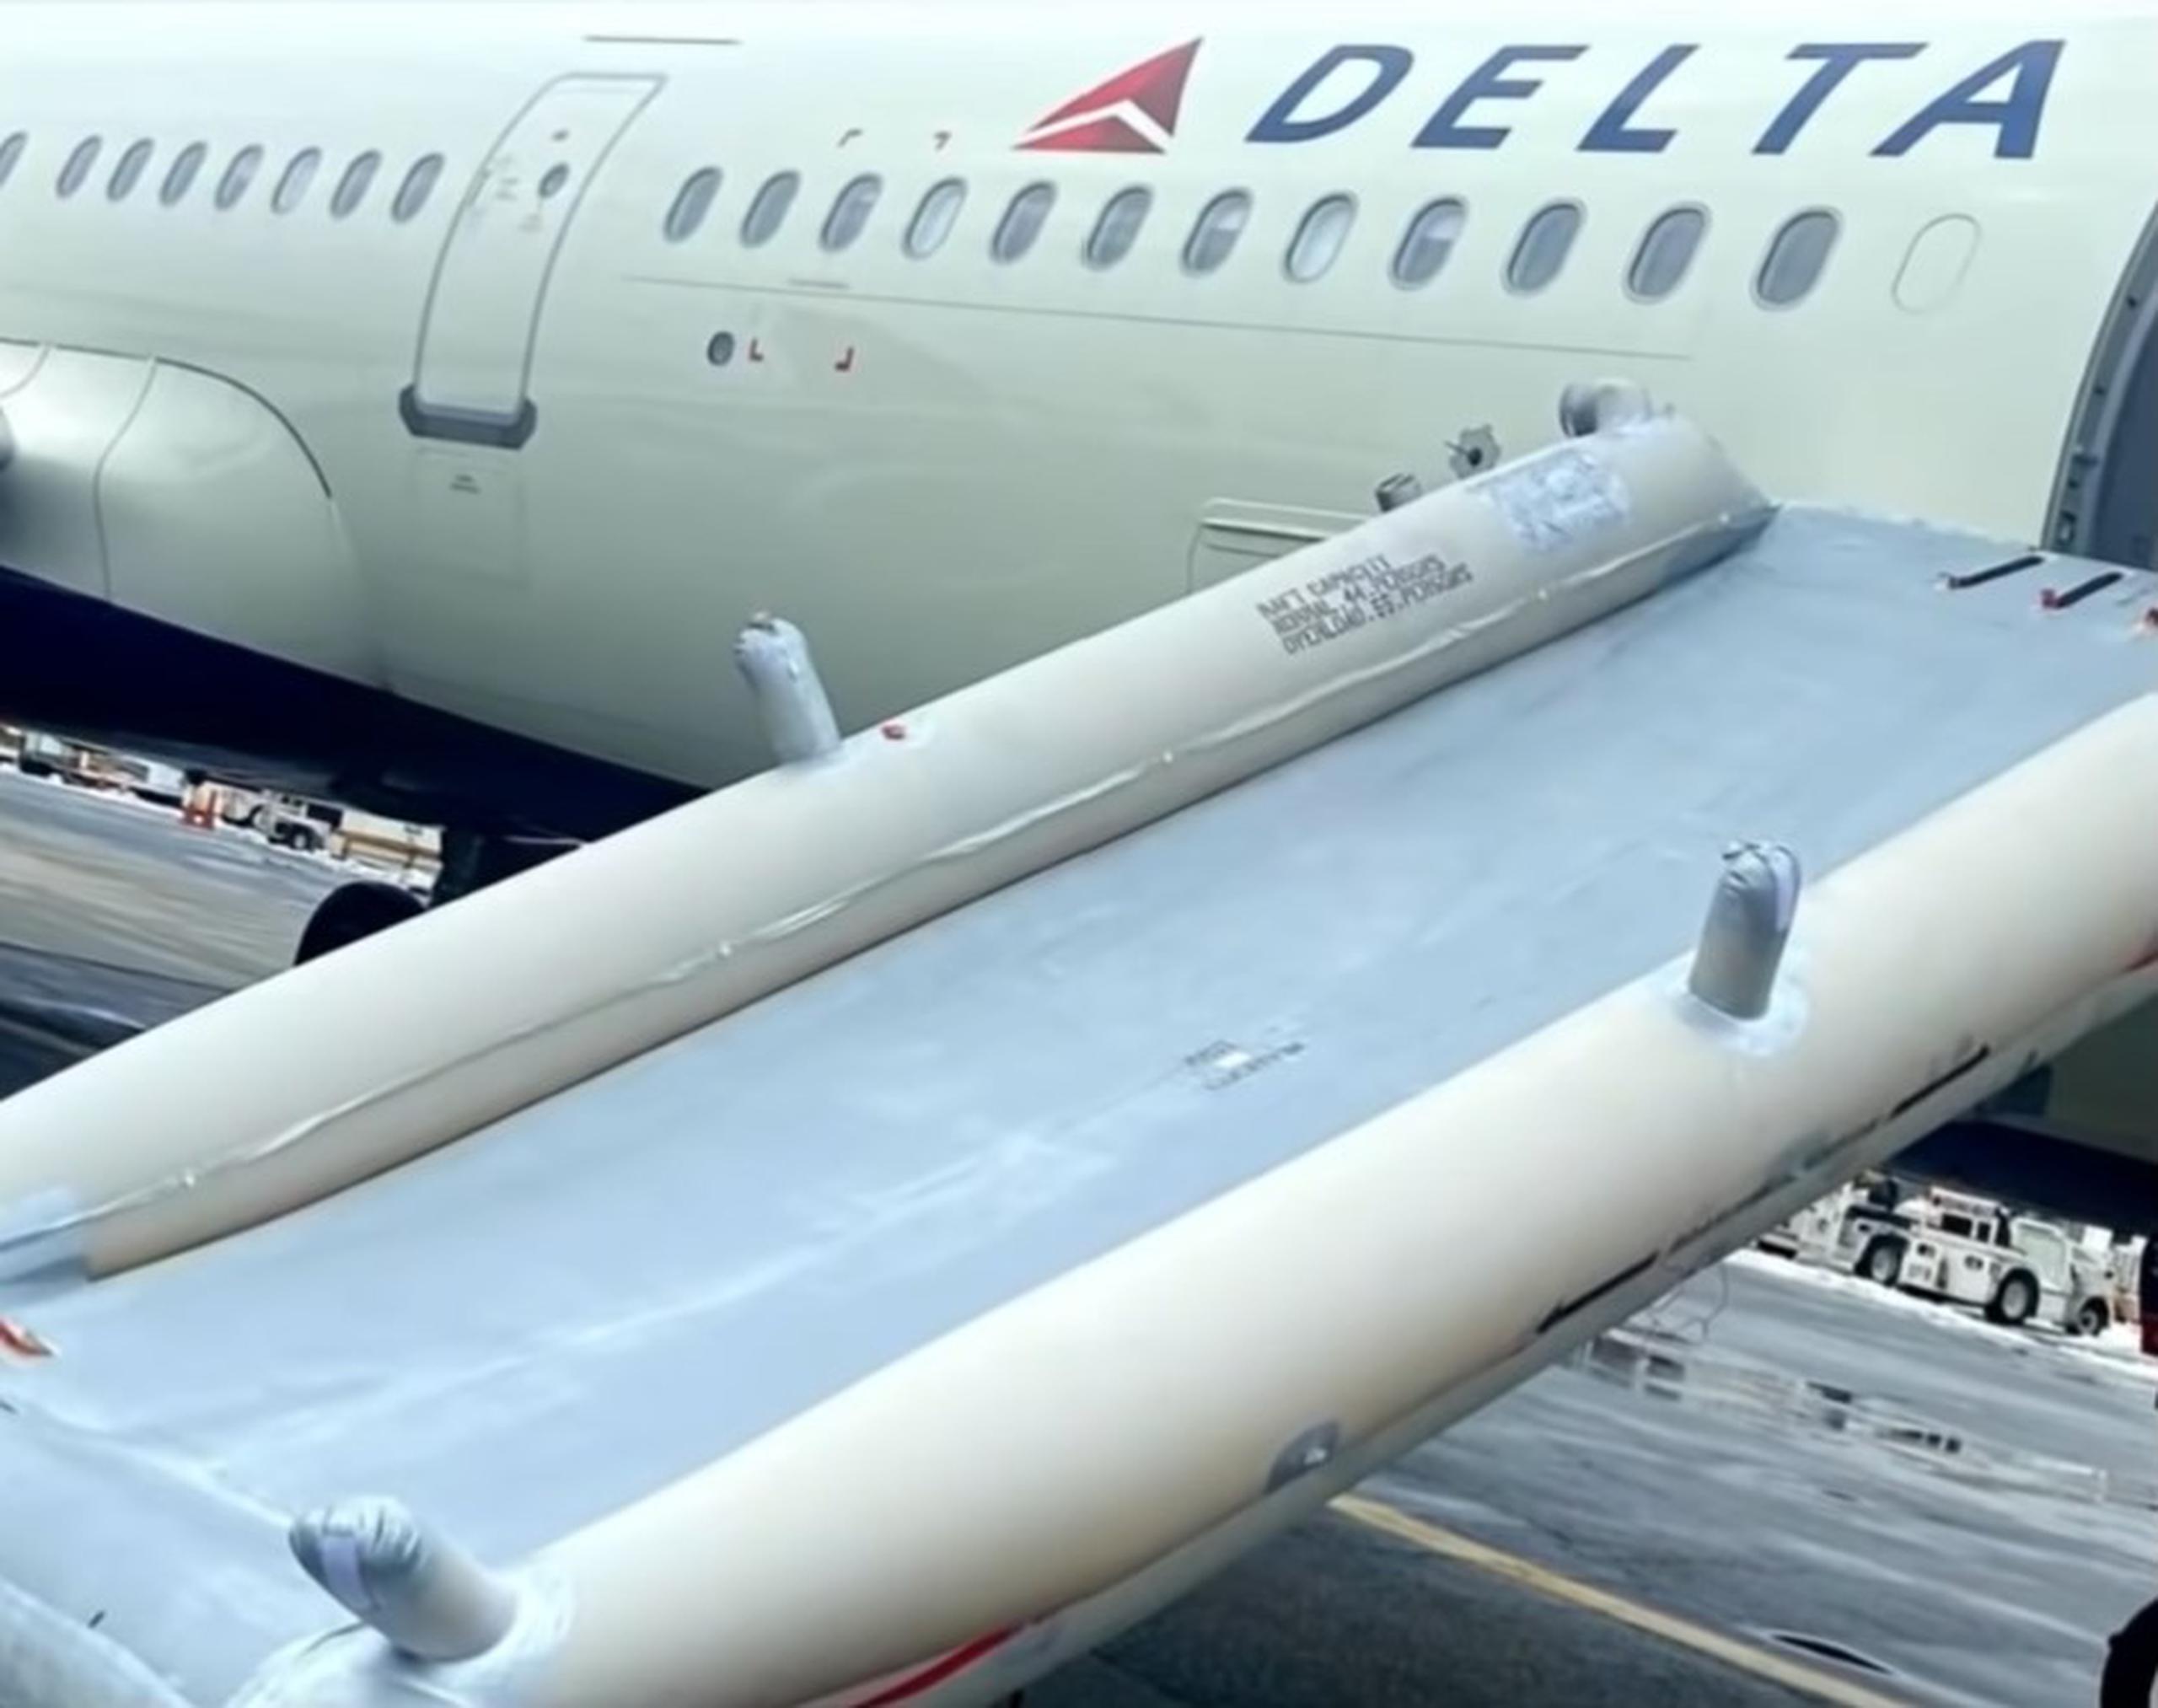 El incidente ocurrió en un avión de Delta Air Lines.